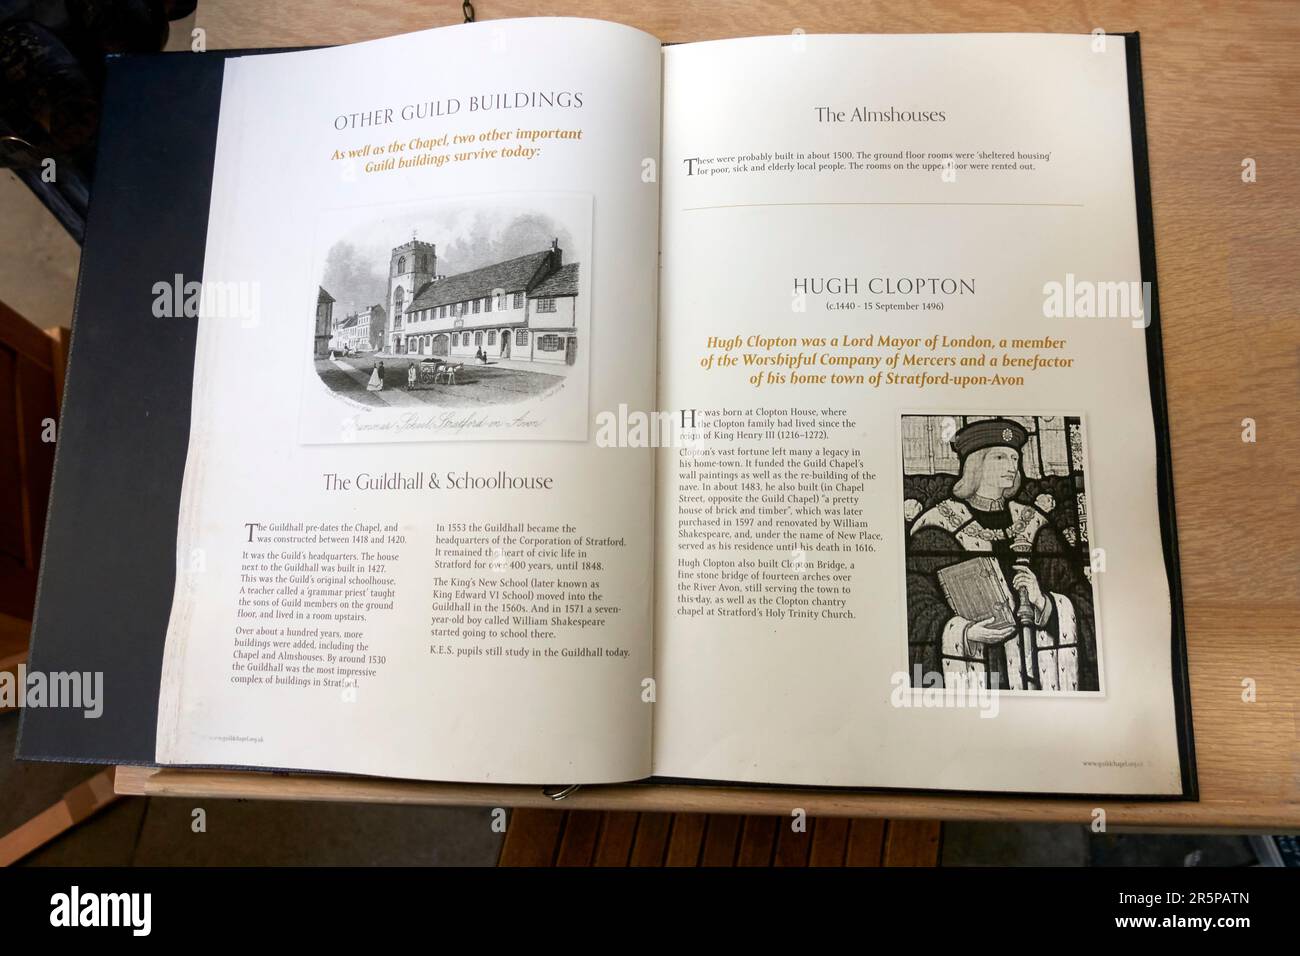 Libro informativo e storia della Guild Chapel, Stratford Upon Avon, Inghilterra, Regno Unito Foto Stock